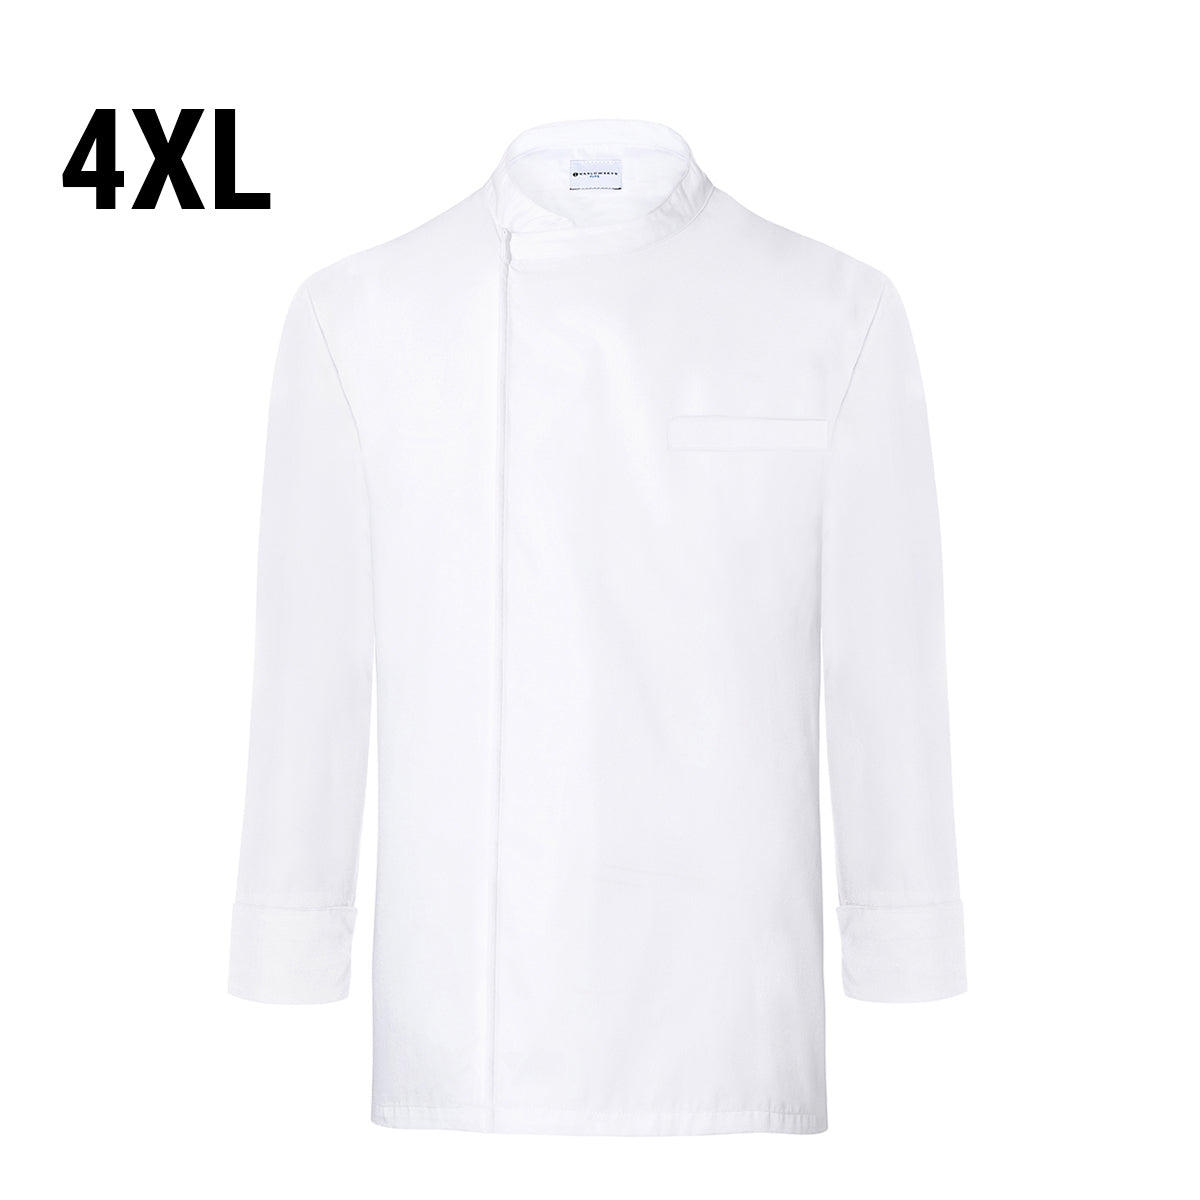 (6 stk) Karlowsky langermet skjorte - hvit - str. 4XL